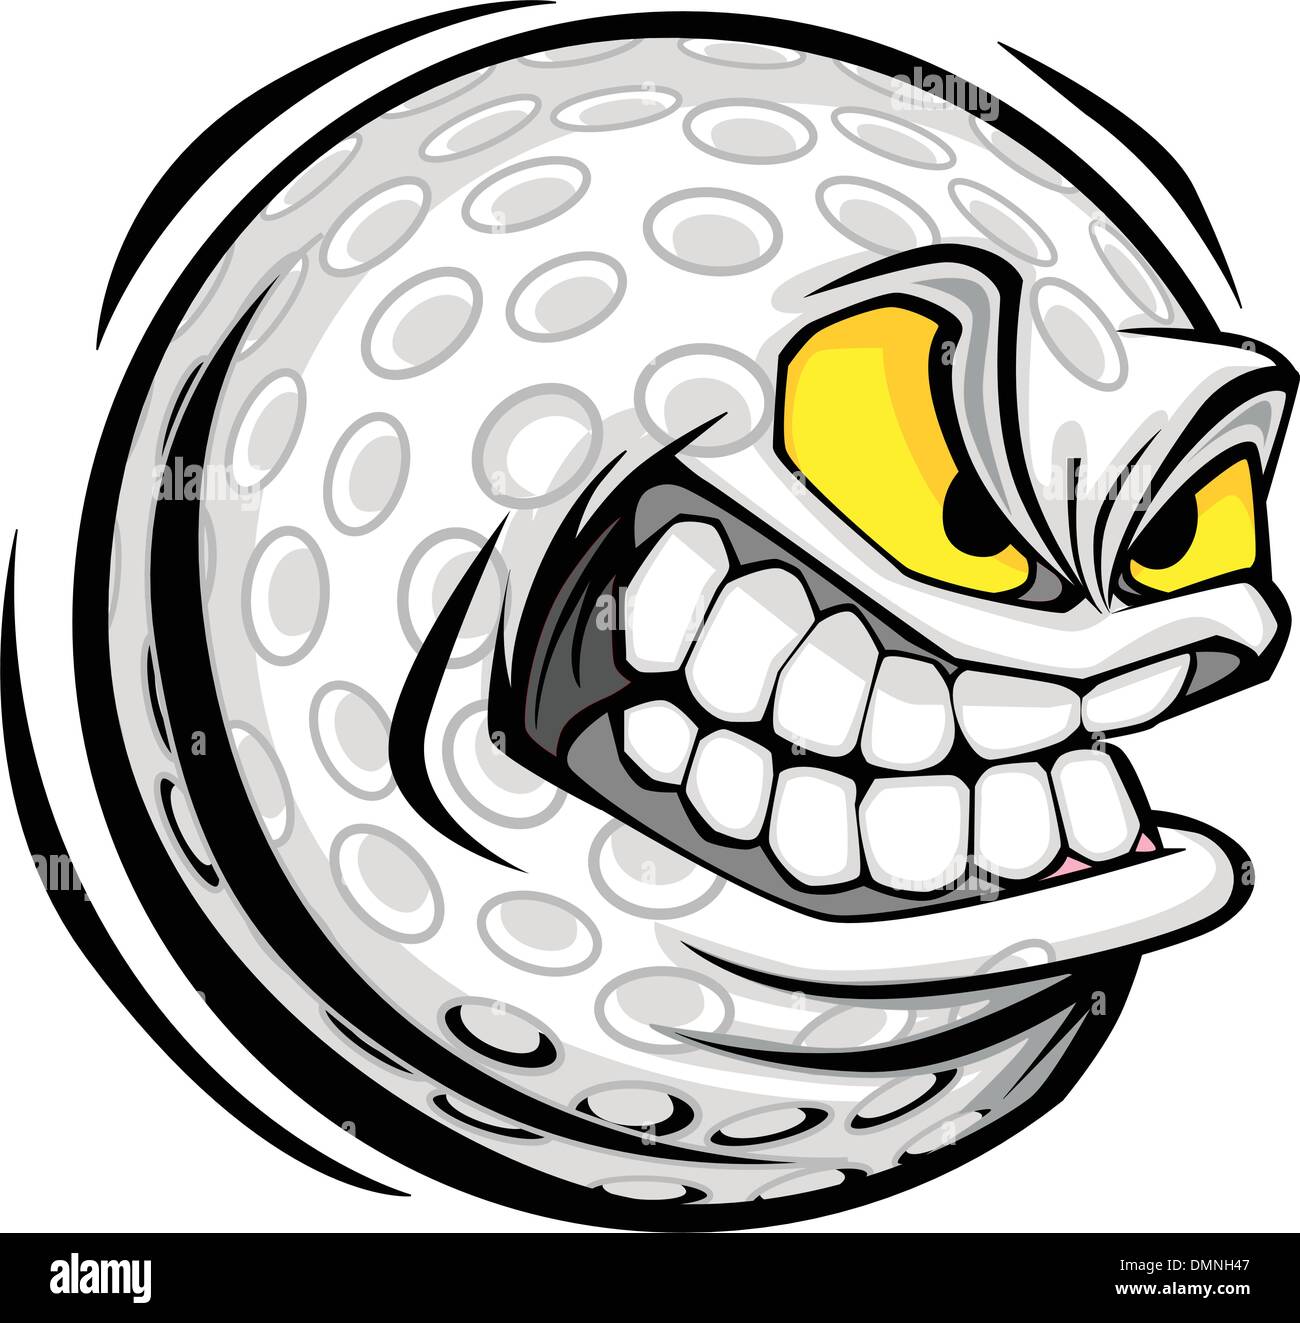 Golf Ball Face Cartoon Vector Image Stock Vector